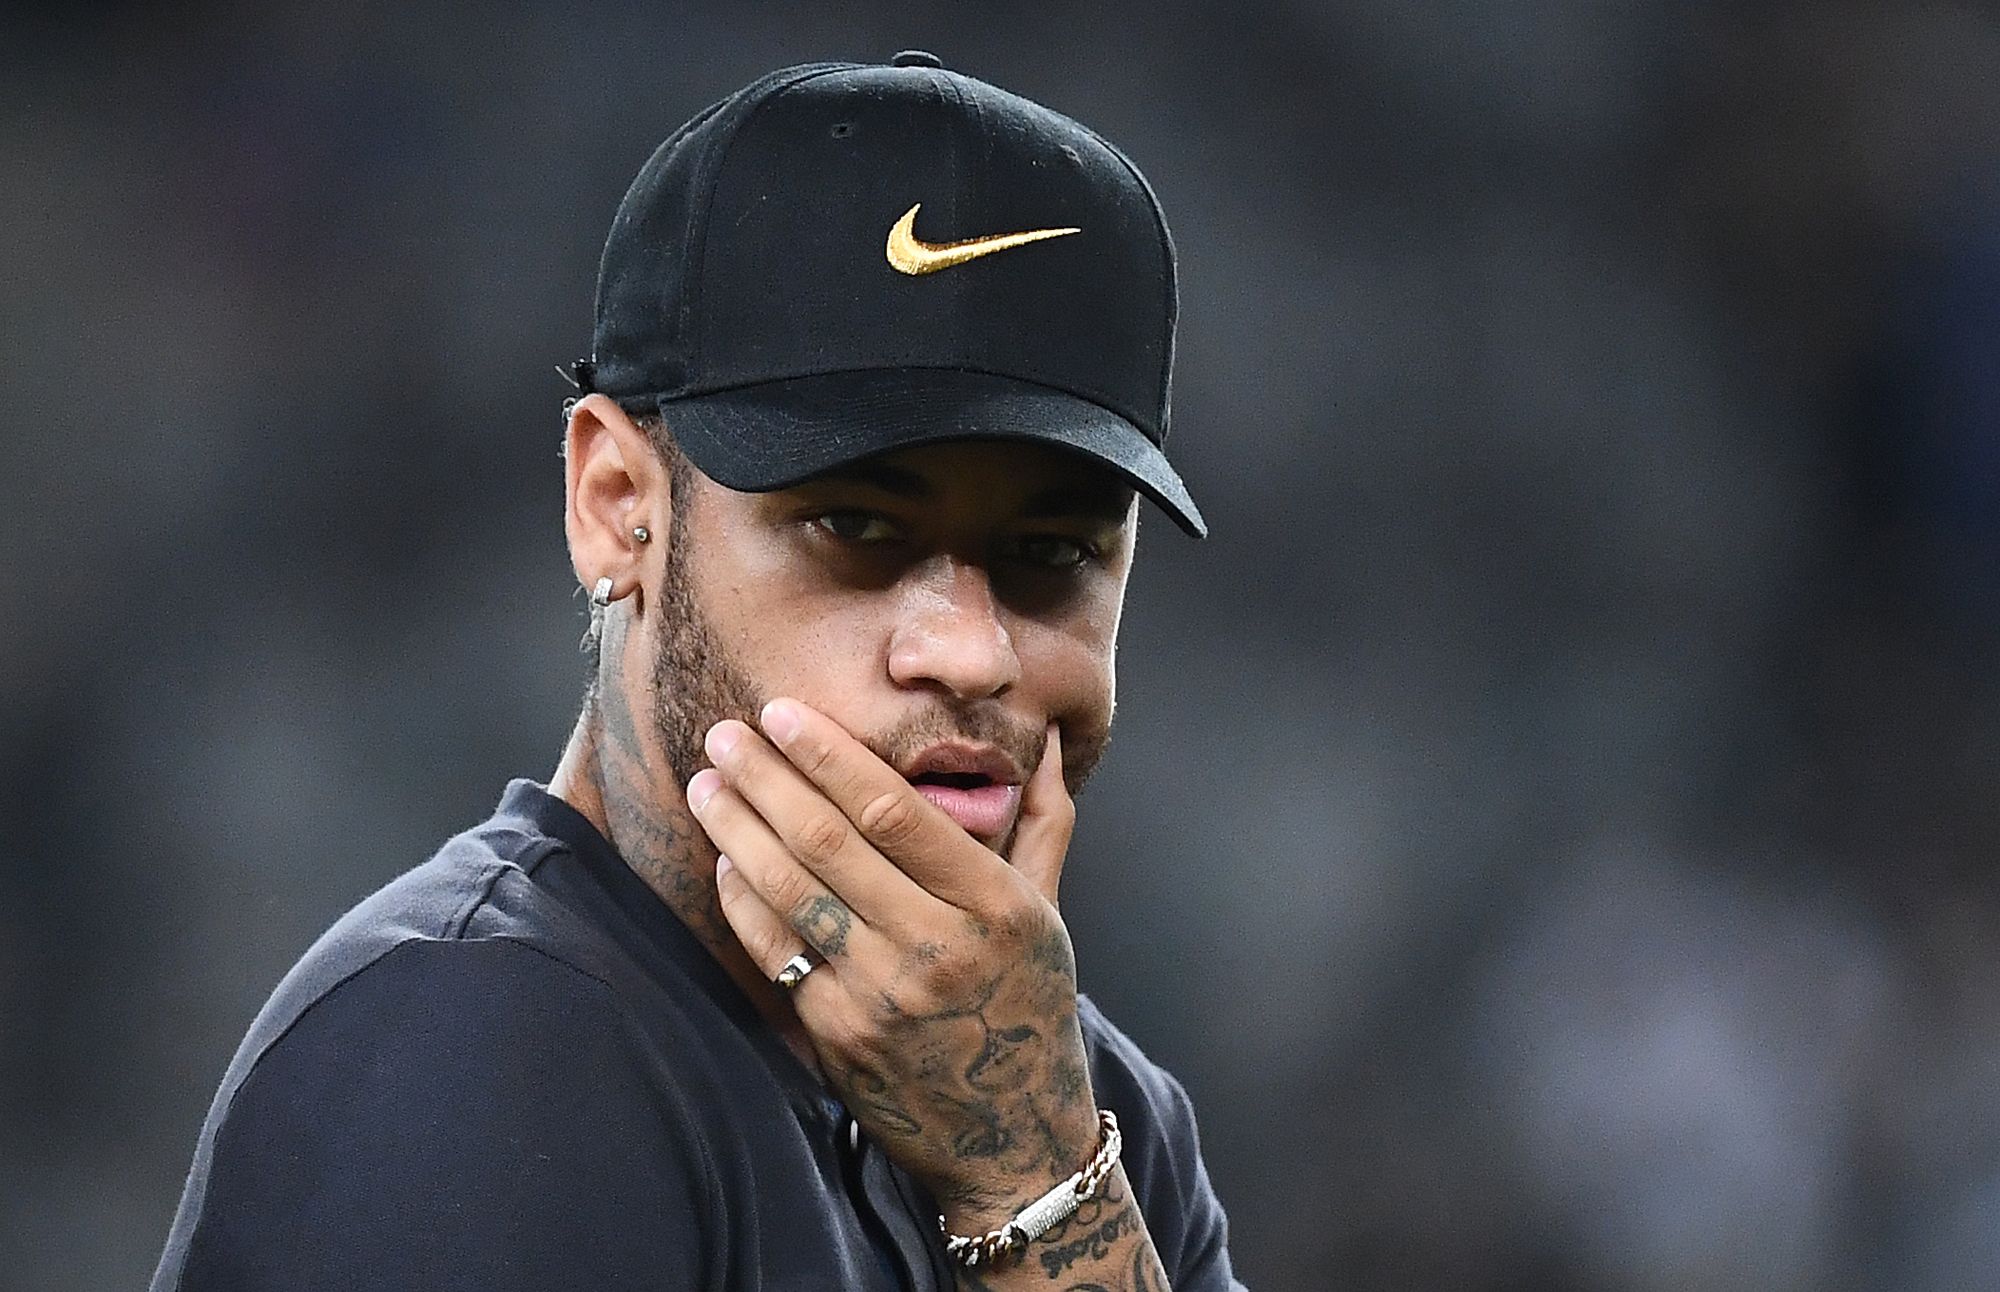 El brasileño Neymar espera que el Barcelona pueda hacer la transacción para regresar al equipo. (Foto Prensa Libre: AFP)